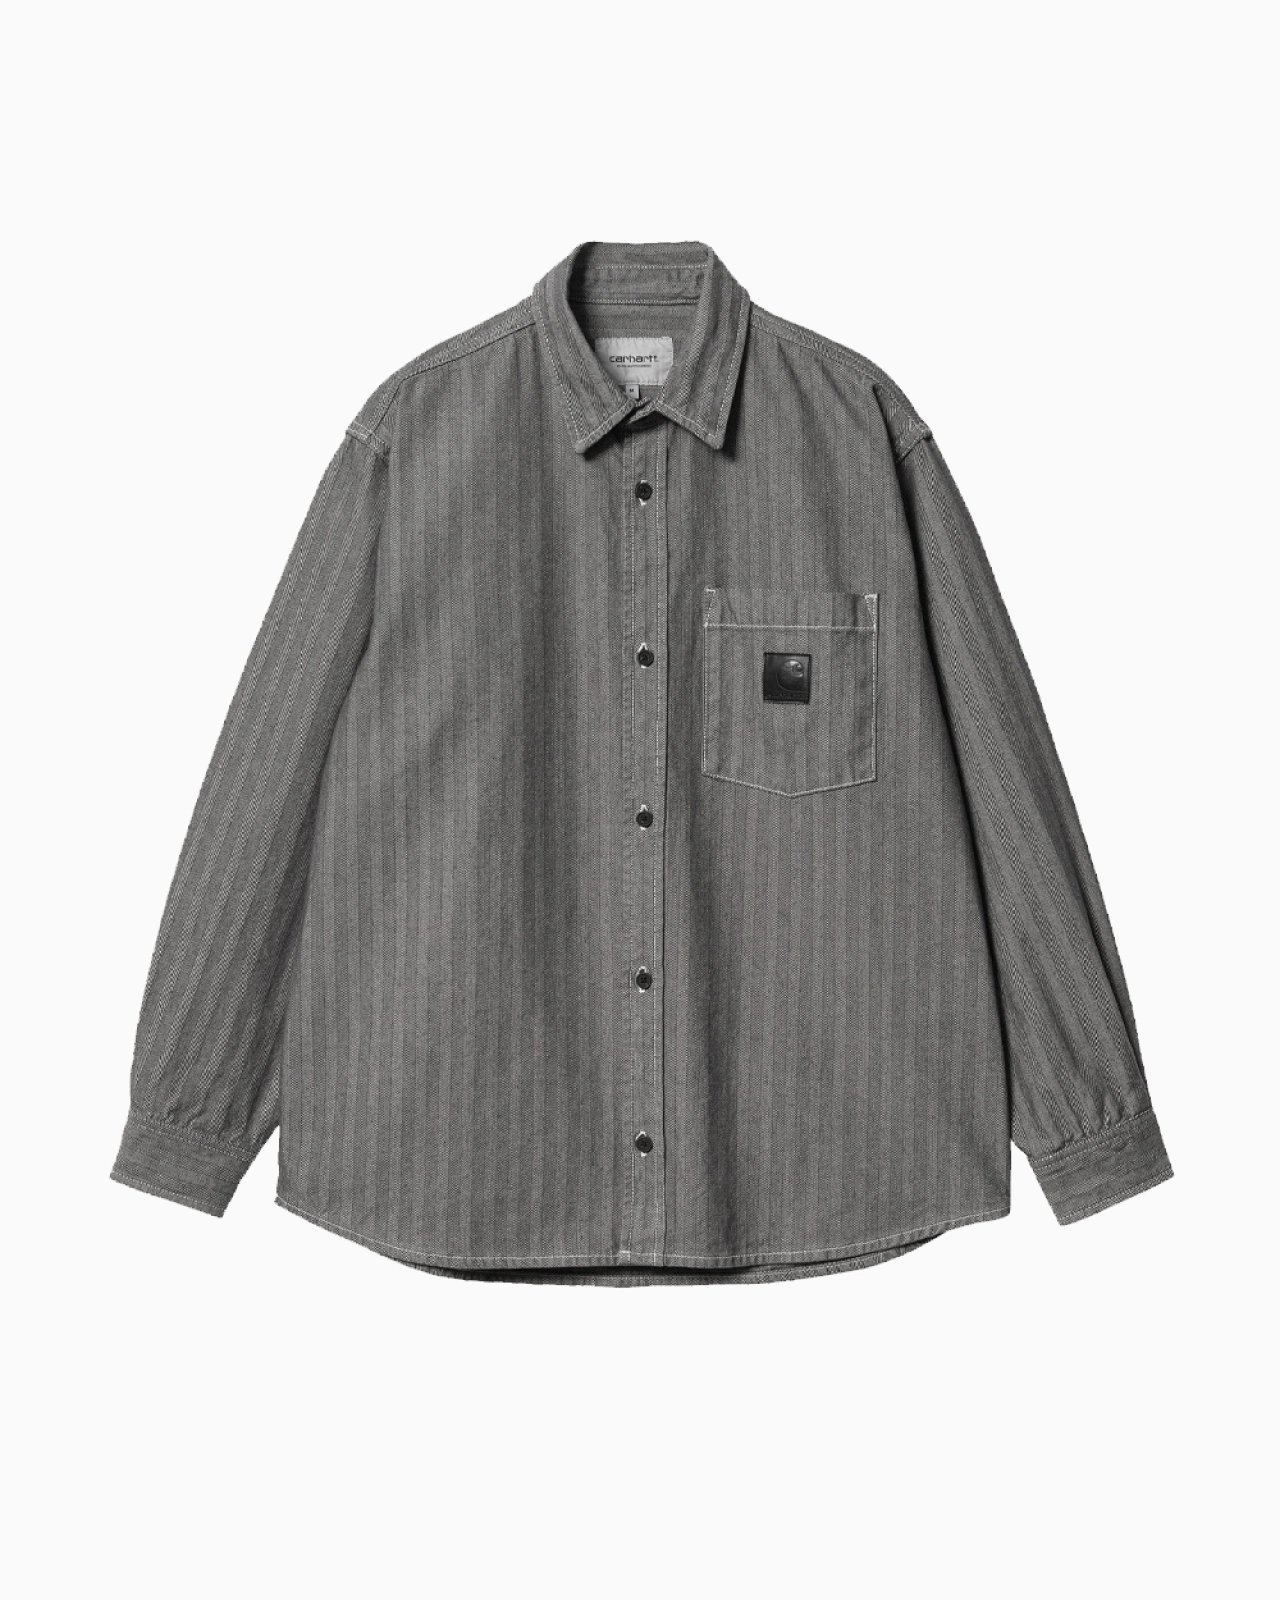 Carhartt Wip: Рубашка Carhartt WIP Menard Shirt Jac